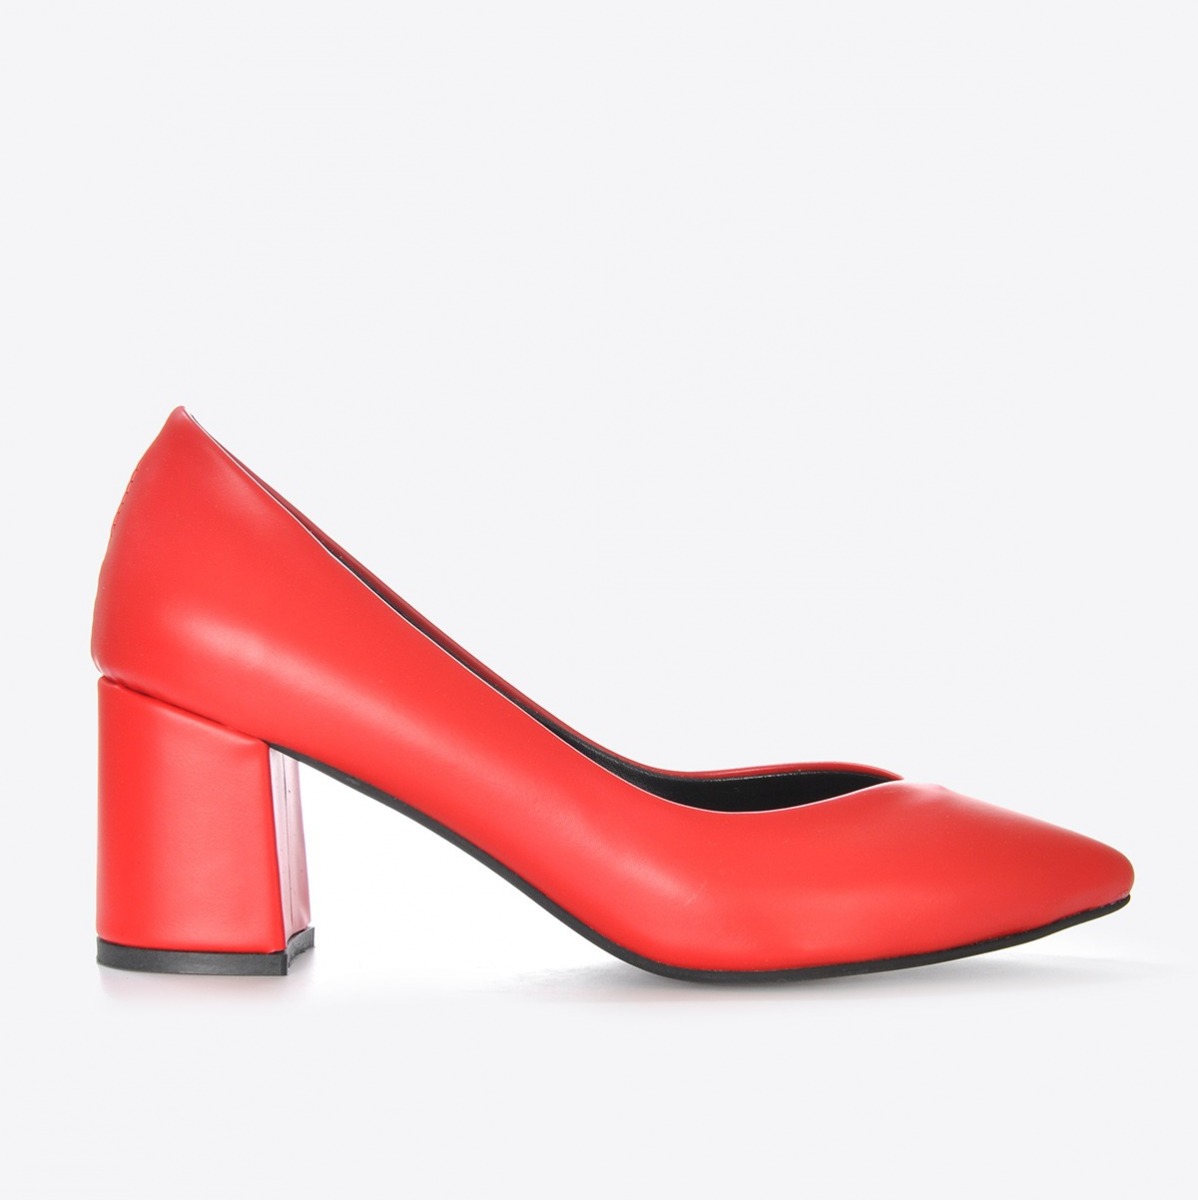 Flo Kadın Kırmızı Klasik Topuklu Ayakkabı VZN21-002Y. 2